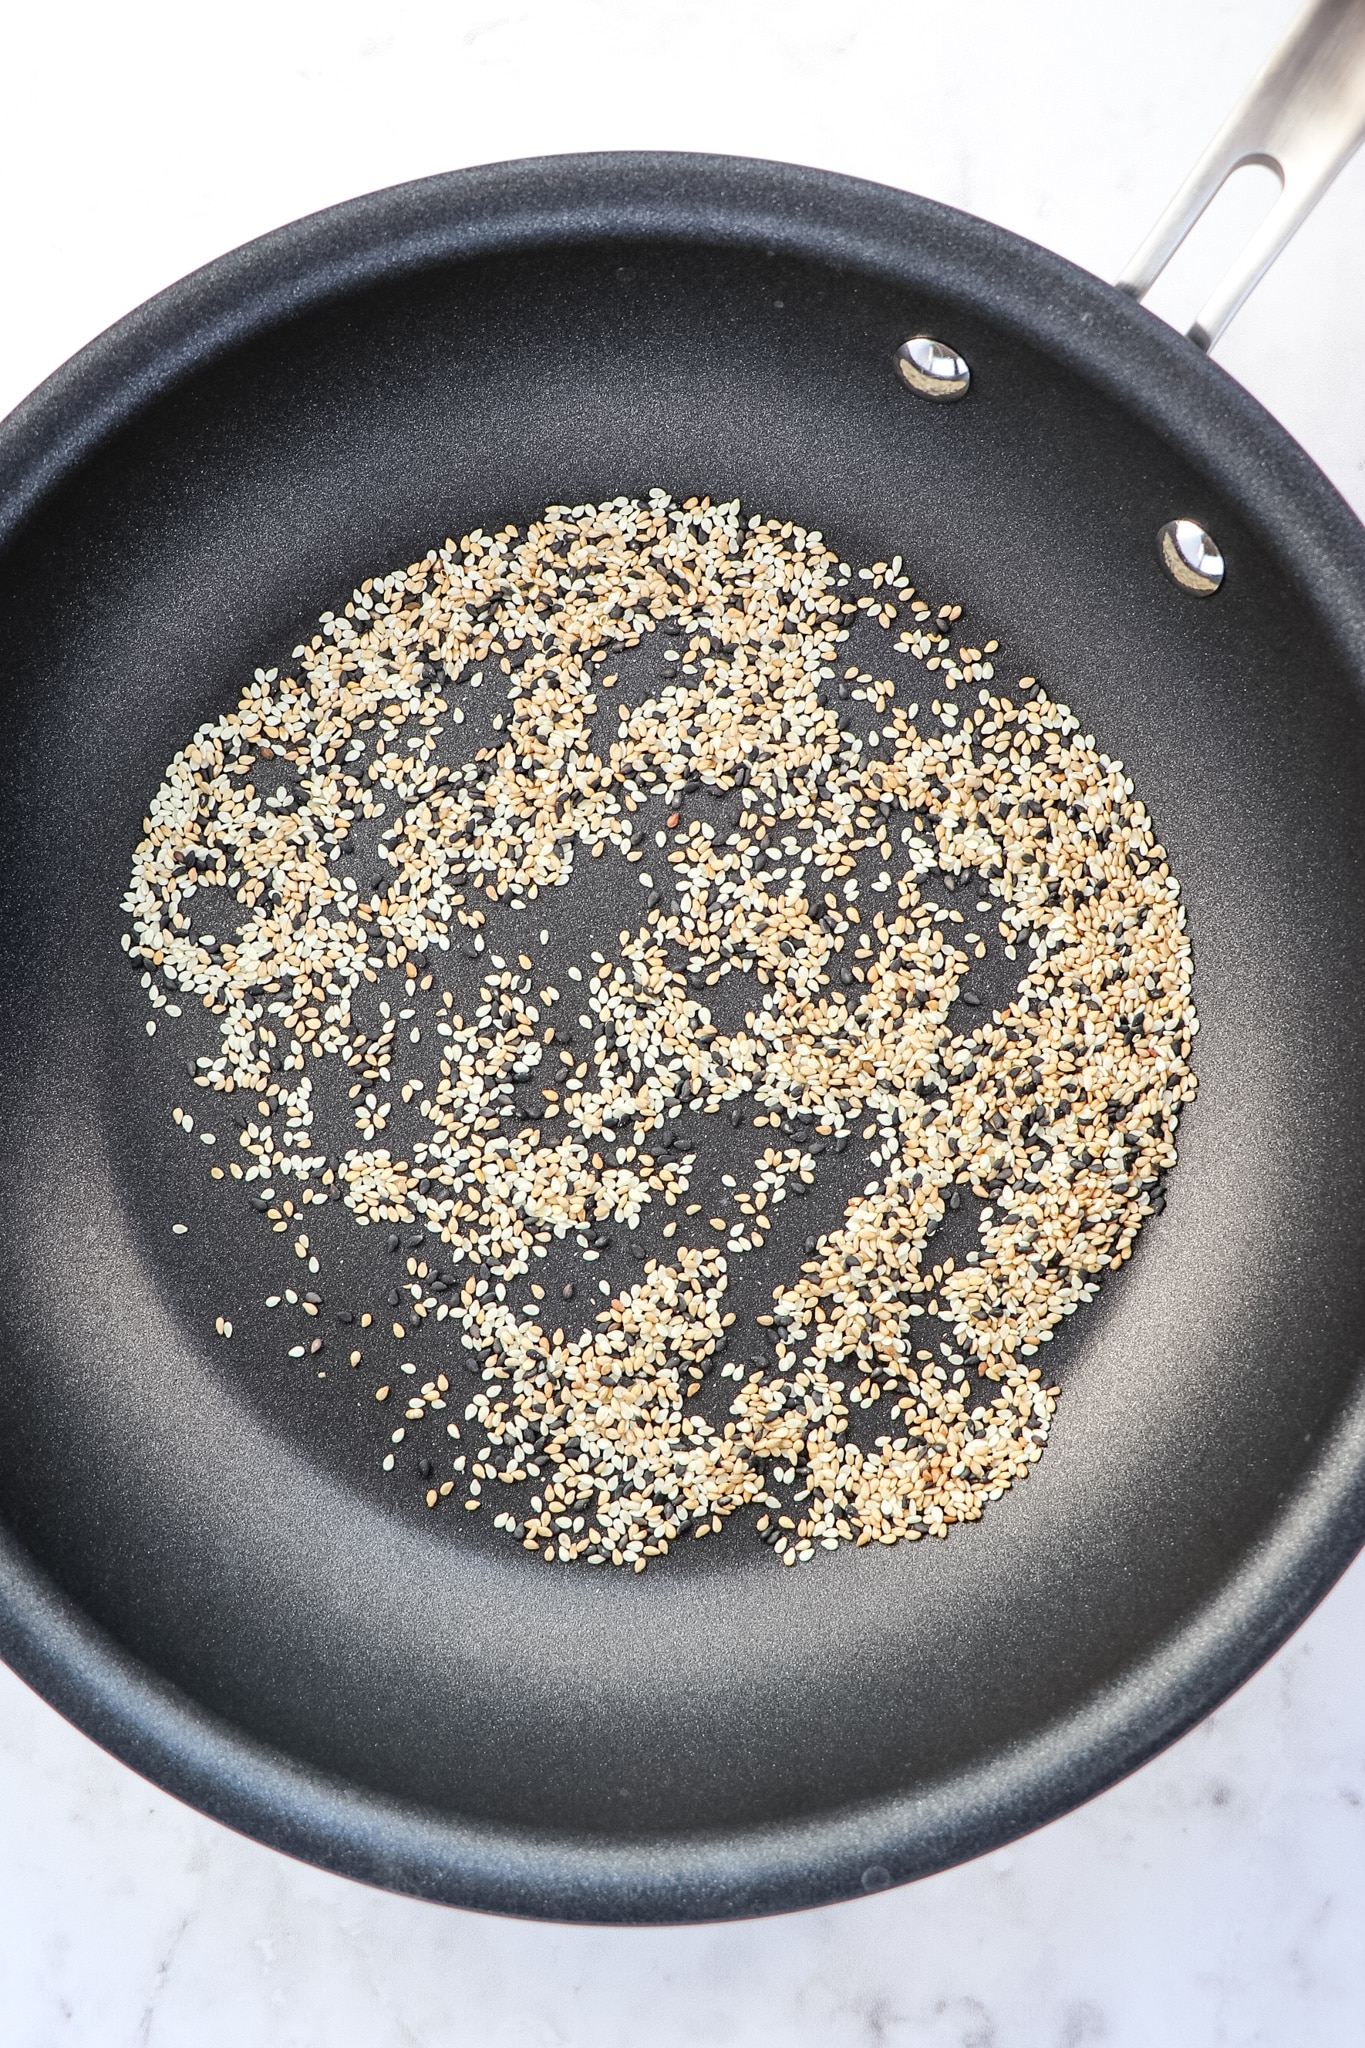 Toasted sesame seeds in skillet.